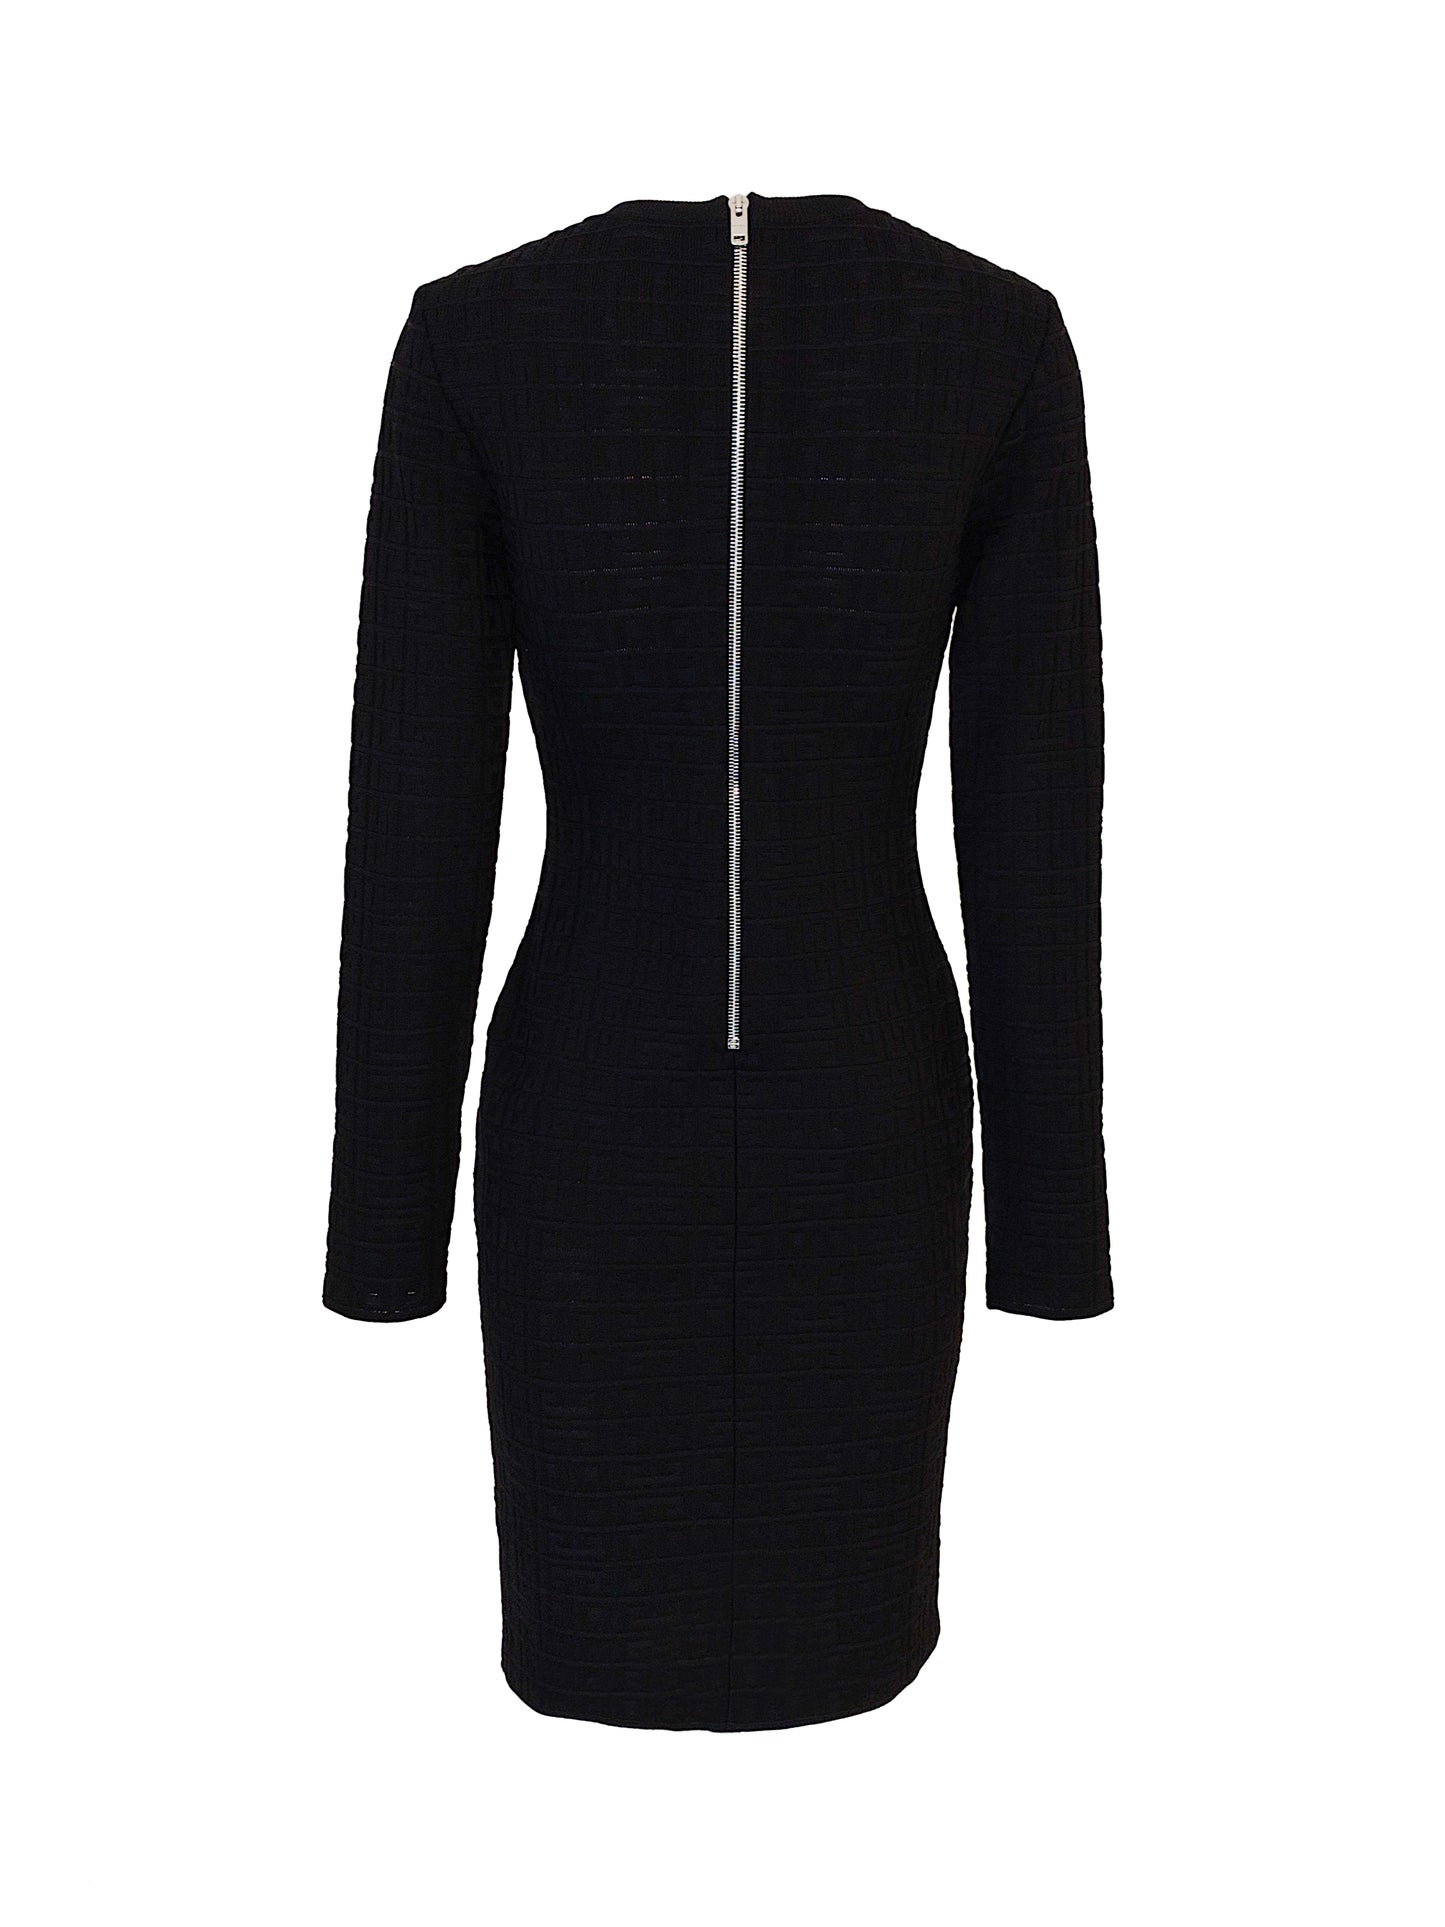 Givenchy Kleid Schwarz  Mit Liebe zum Detail überzeugt dieses Kleid von GIVENCHY mit eingestricktem Logo-Emblem, sowie einem silbernen Logo-Reisverschluss auf dem Rücken. Das schlichte Kleid passt perfekt zu eleganten Anlässen und lässt sich sehr einfach und vielseitig kombinieren.